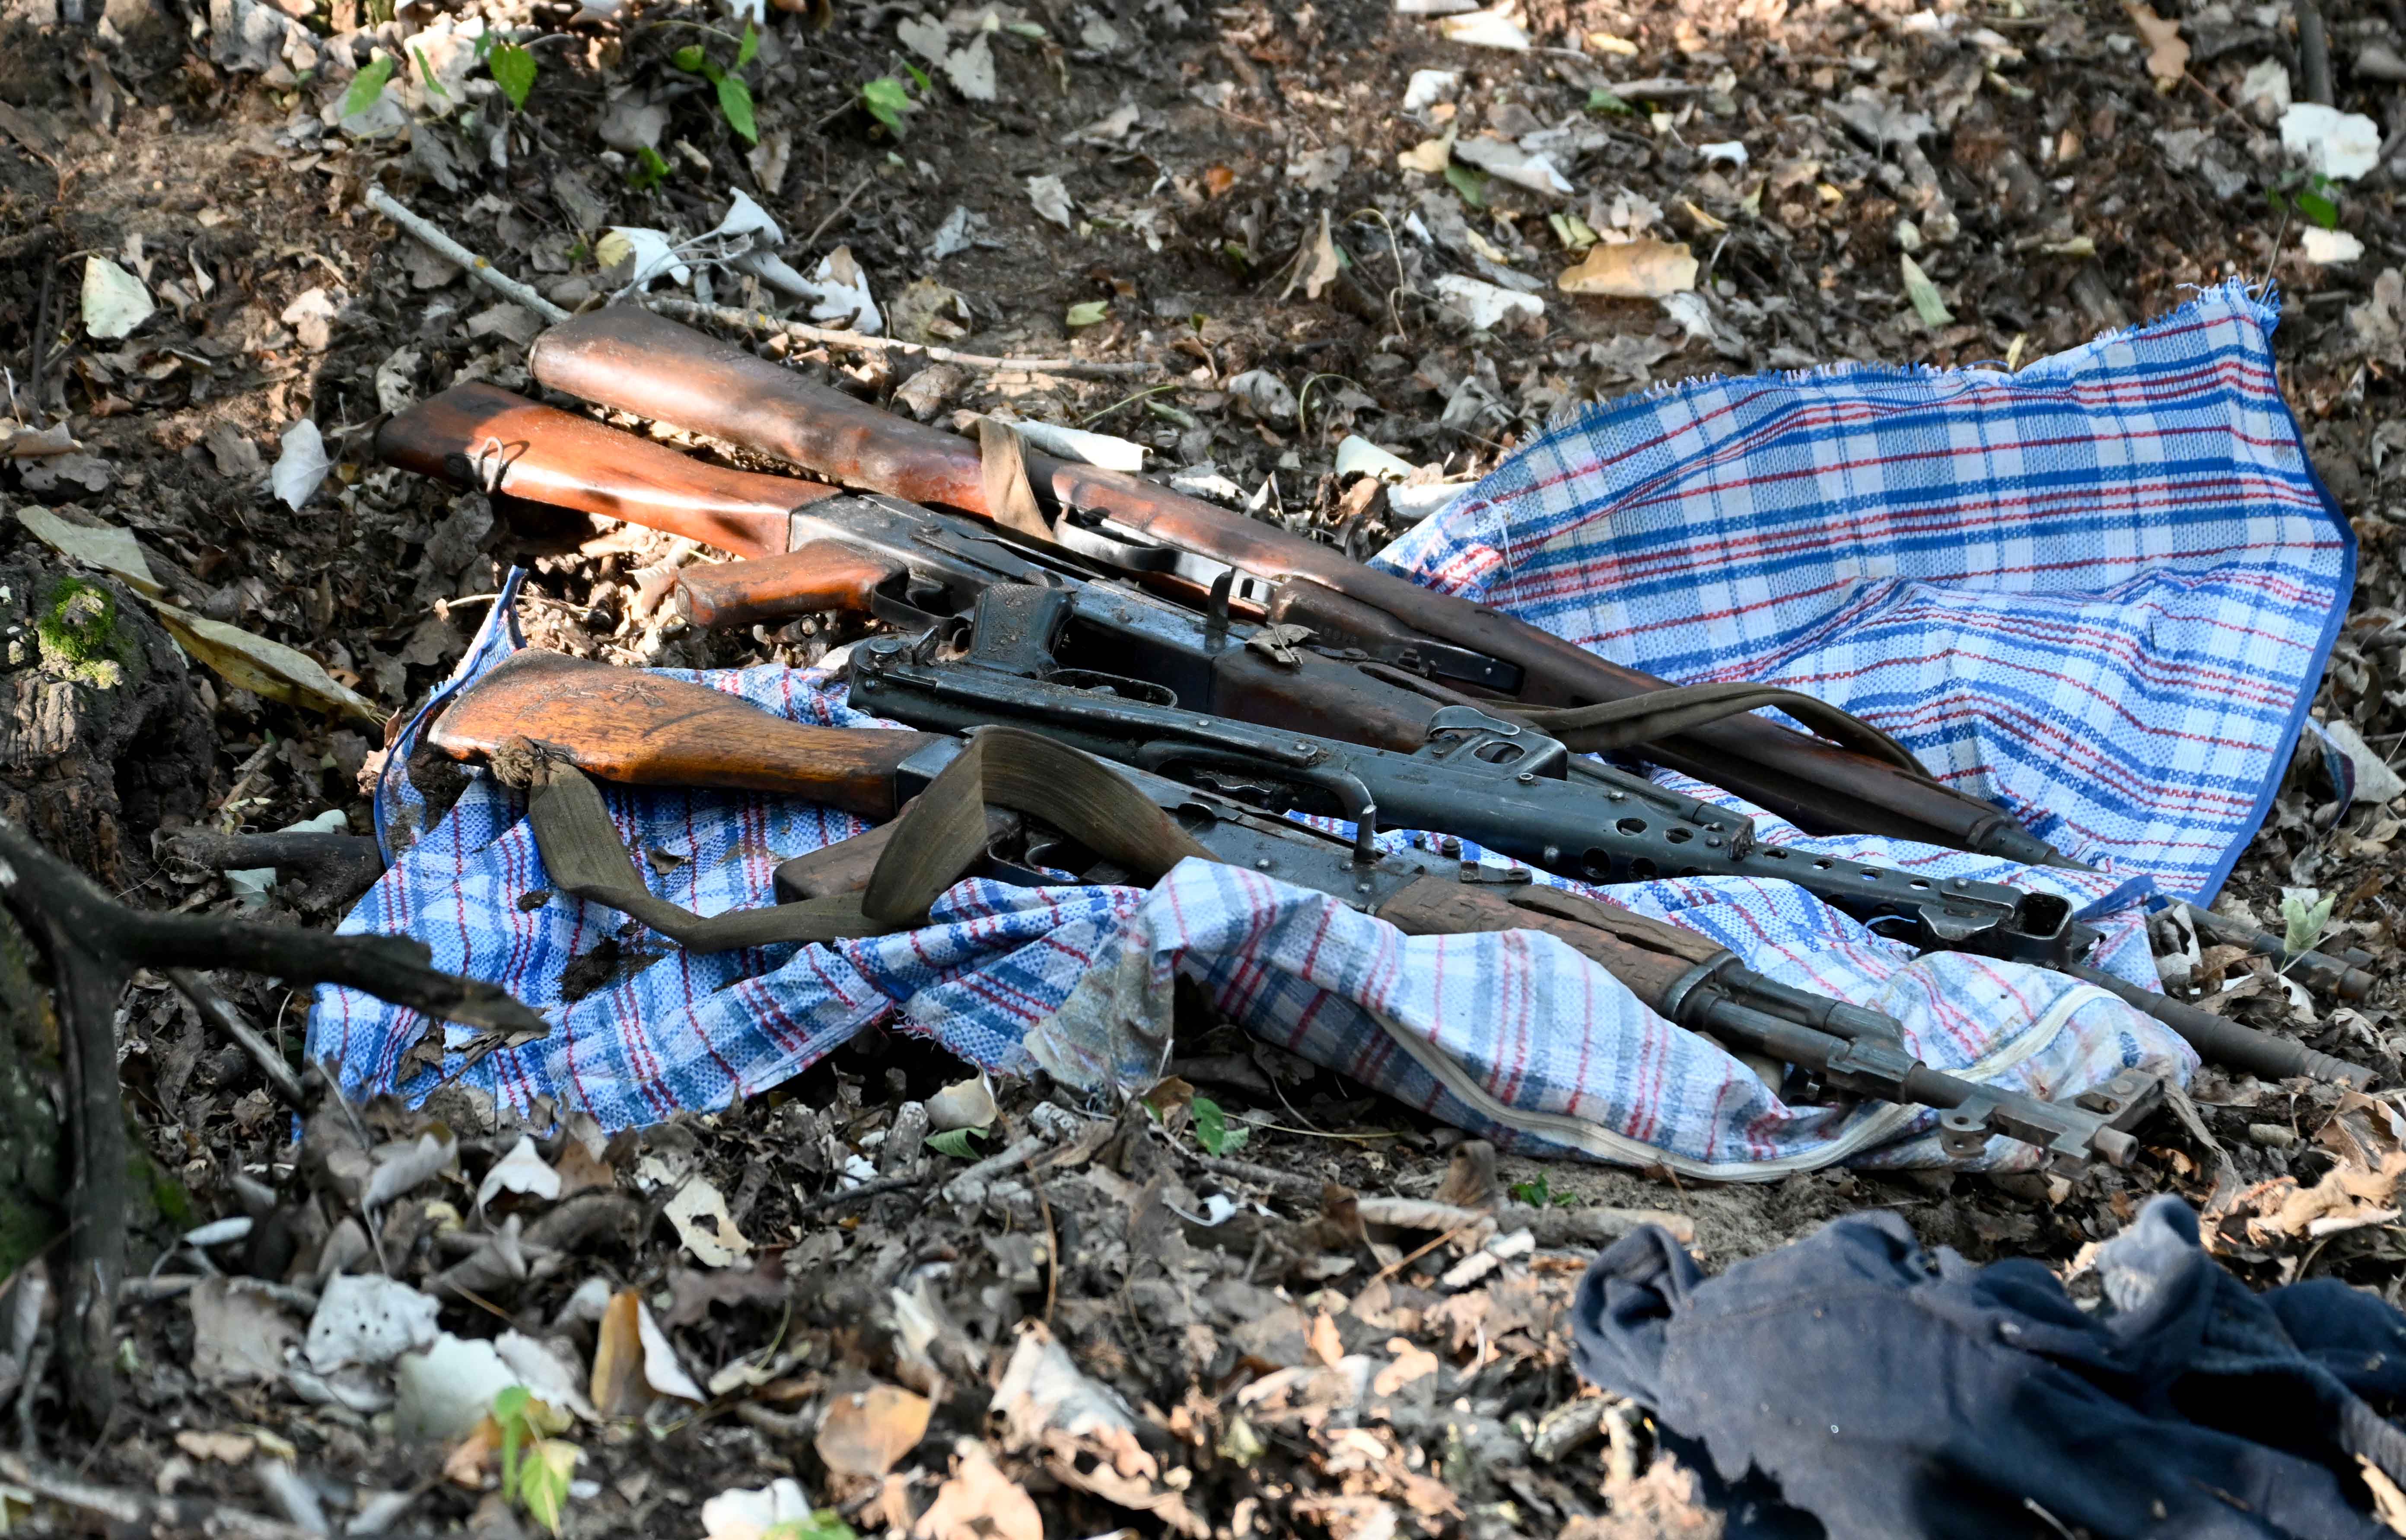 Припадници МУП-а на подручју Суботице, Сомбора и Кикинде  пронашли 371 ирегуларног мигранта, оружје, агрегате и документа